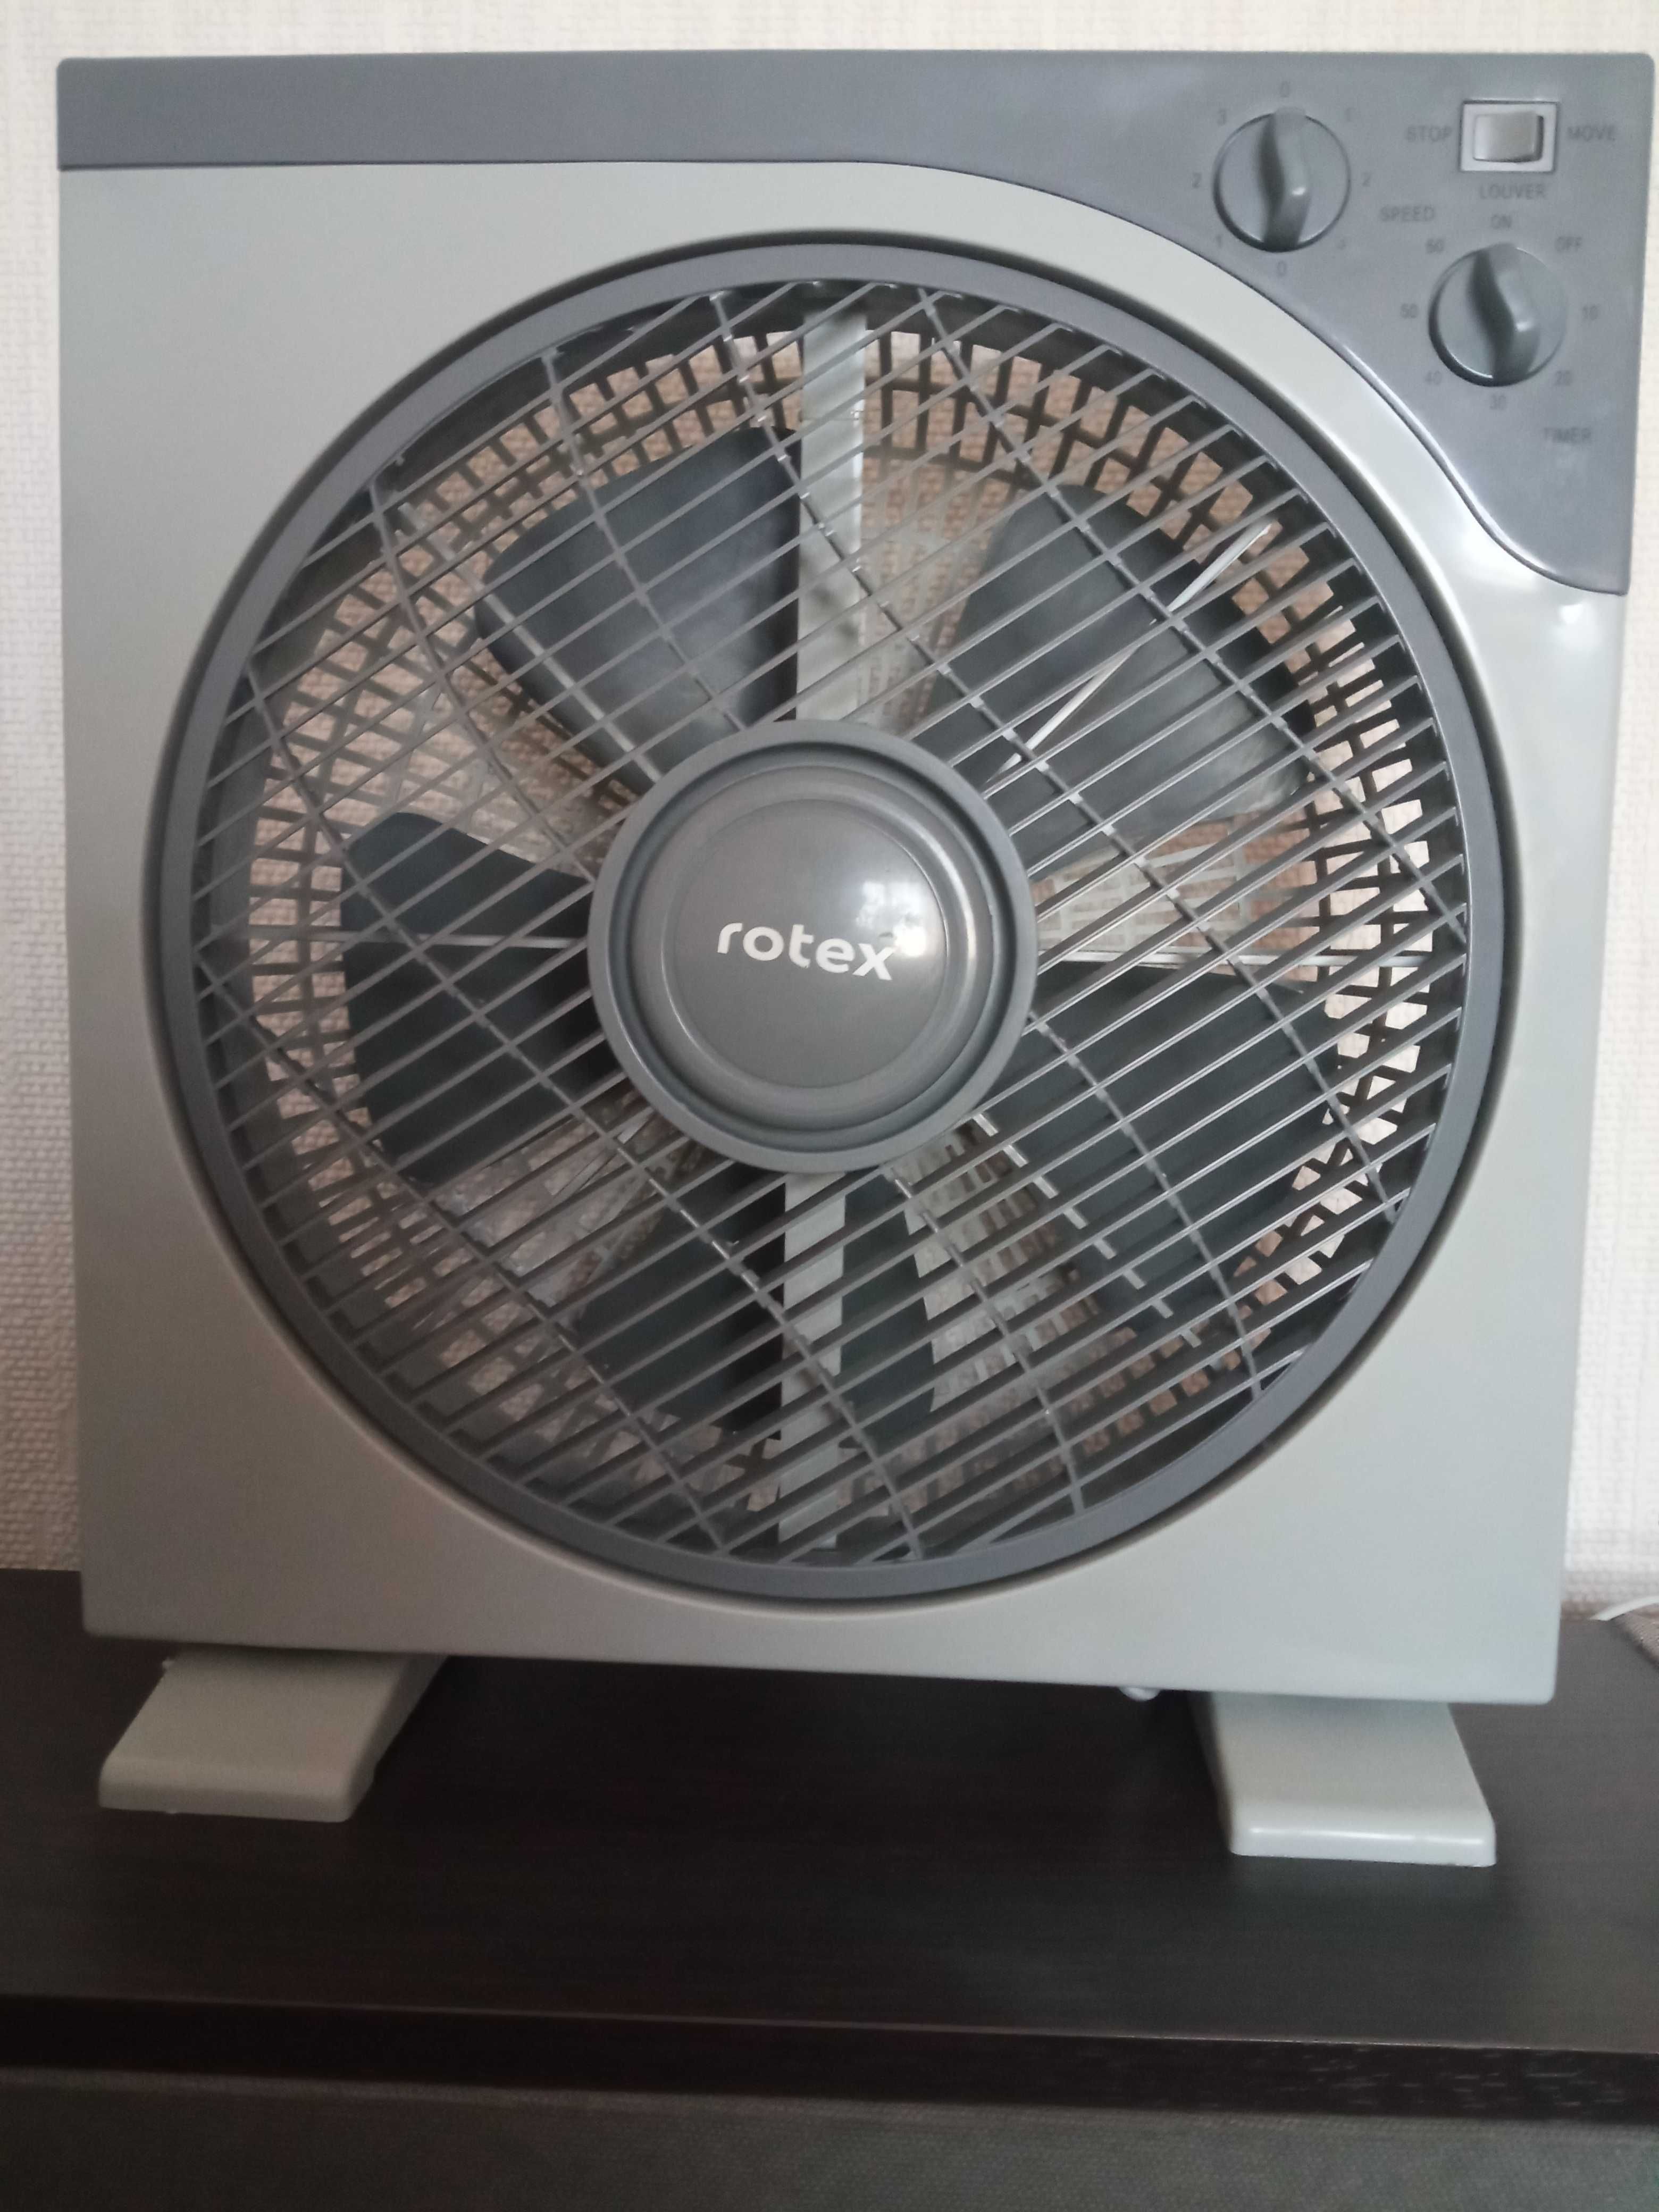 Вентилятор Rotex RAT12-E, мощность 40Вт